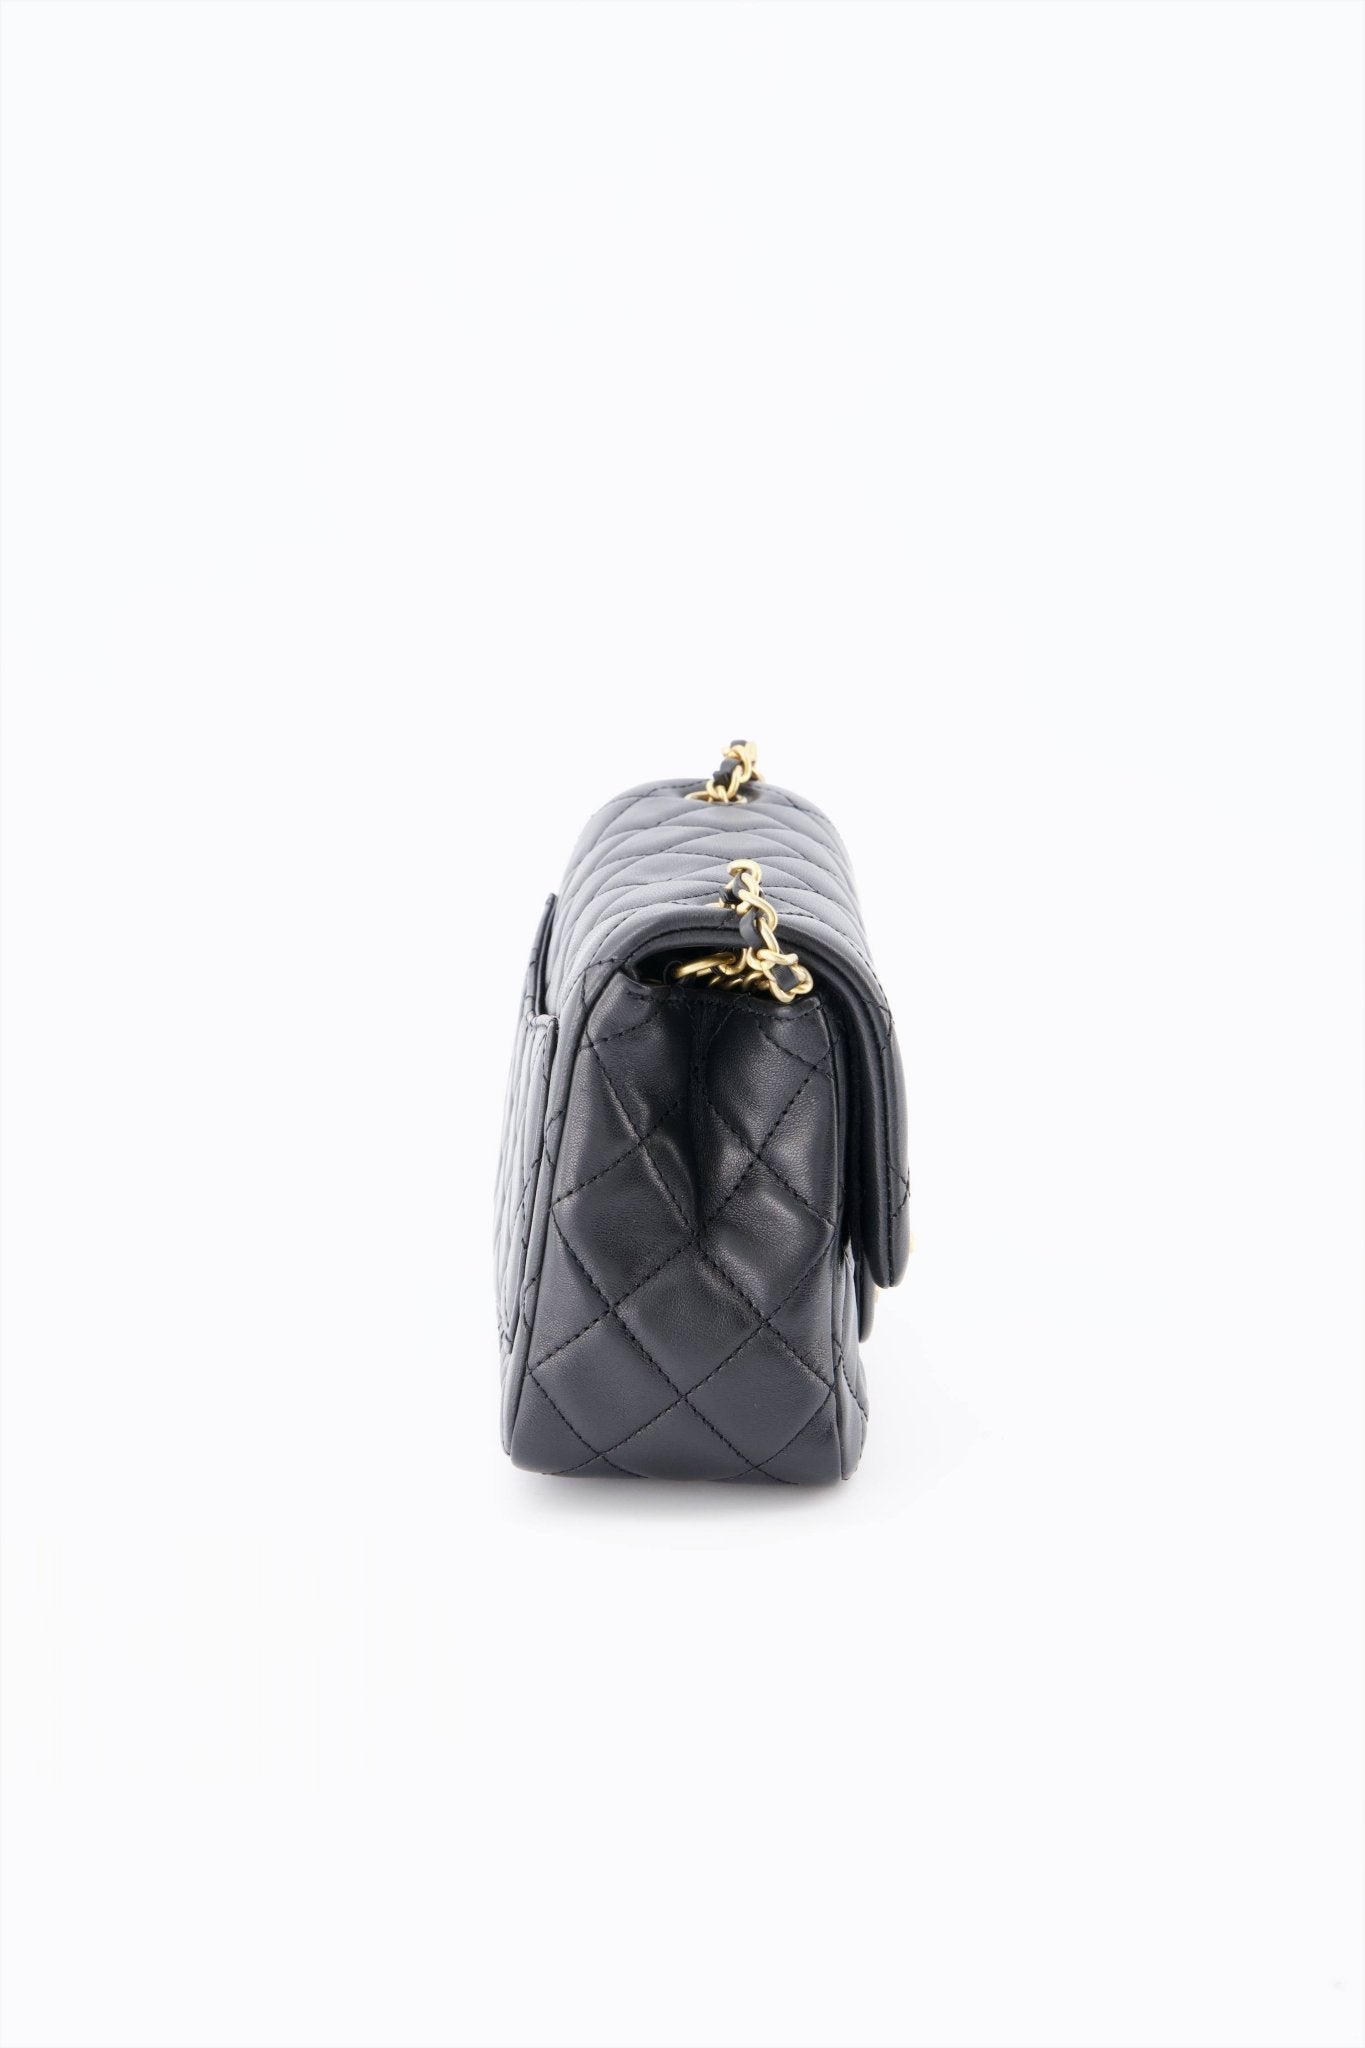 Chanel Mini Square Flap Bag